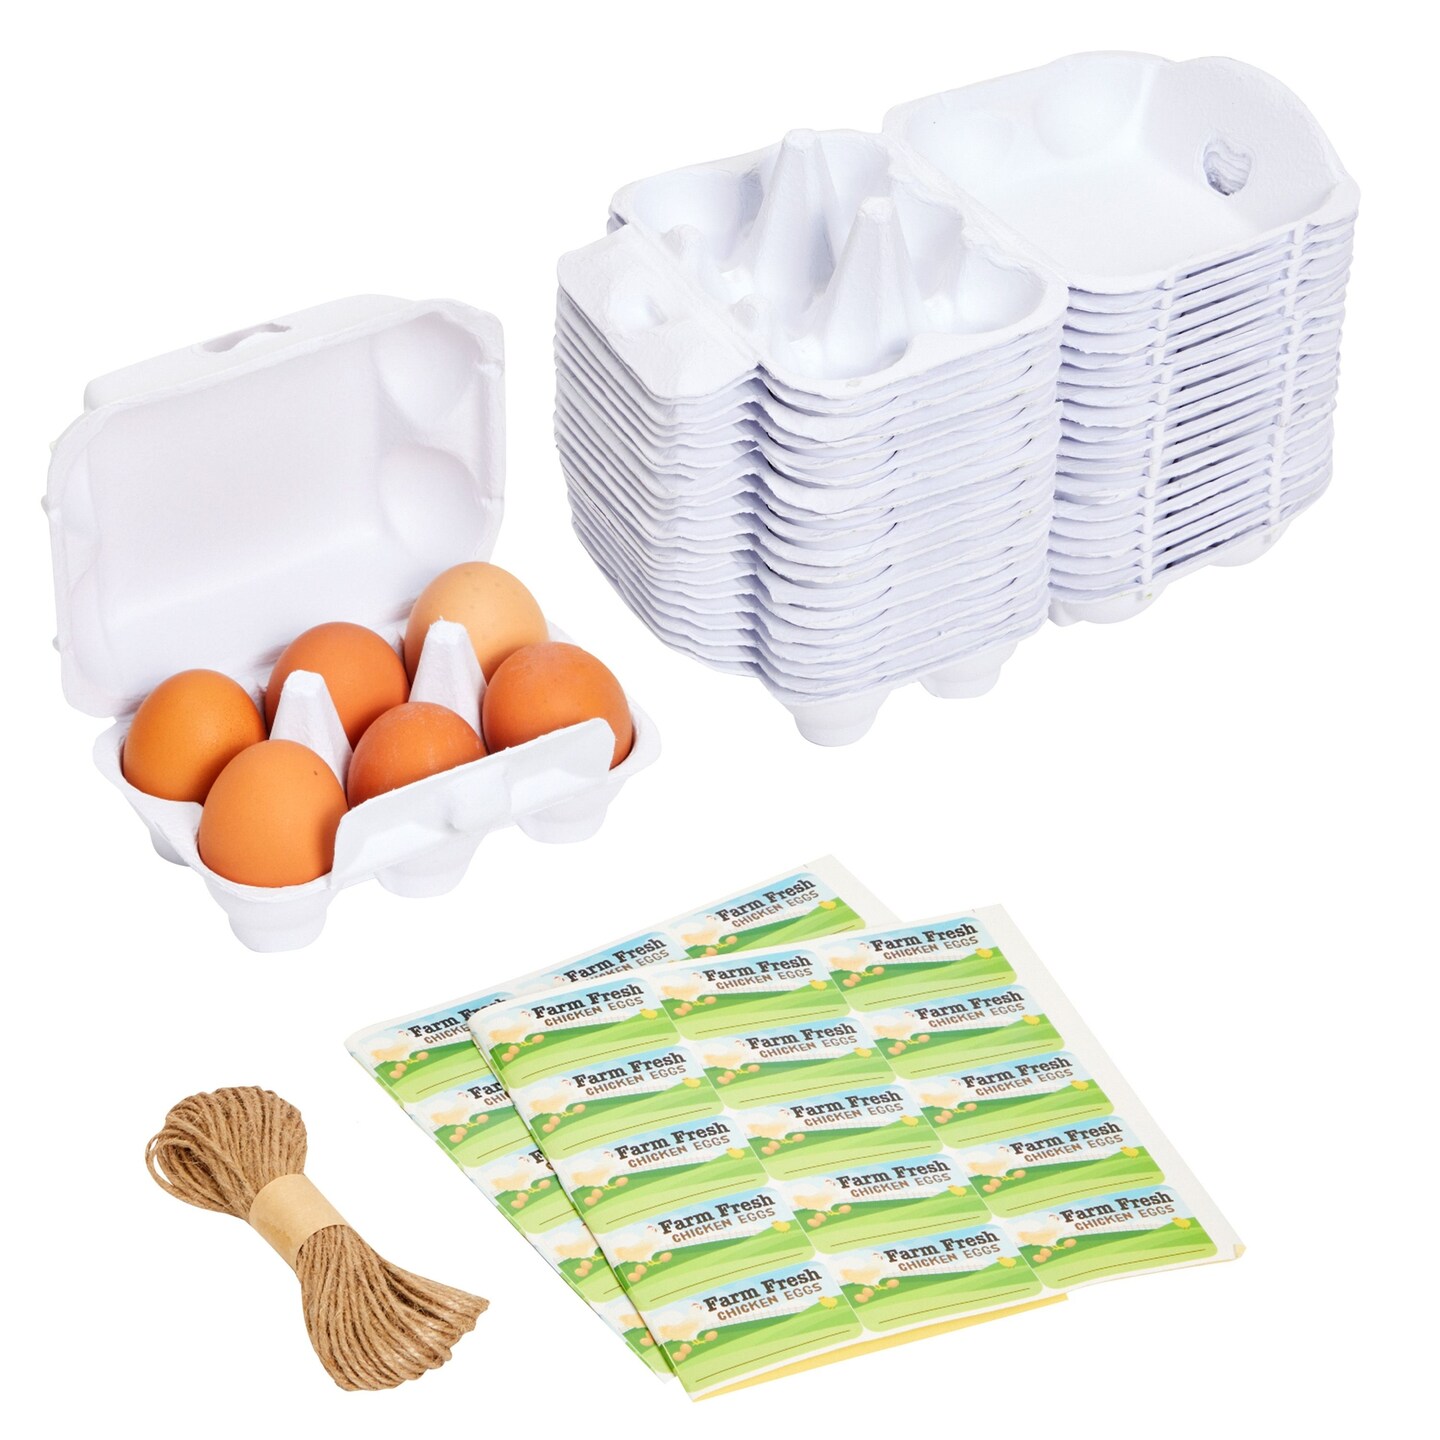 Pulp Egg Cartons (One Dozen) - 20/Pack